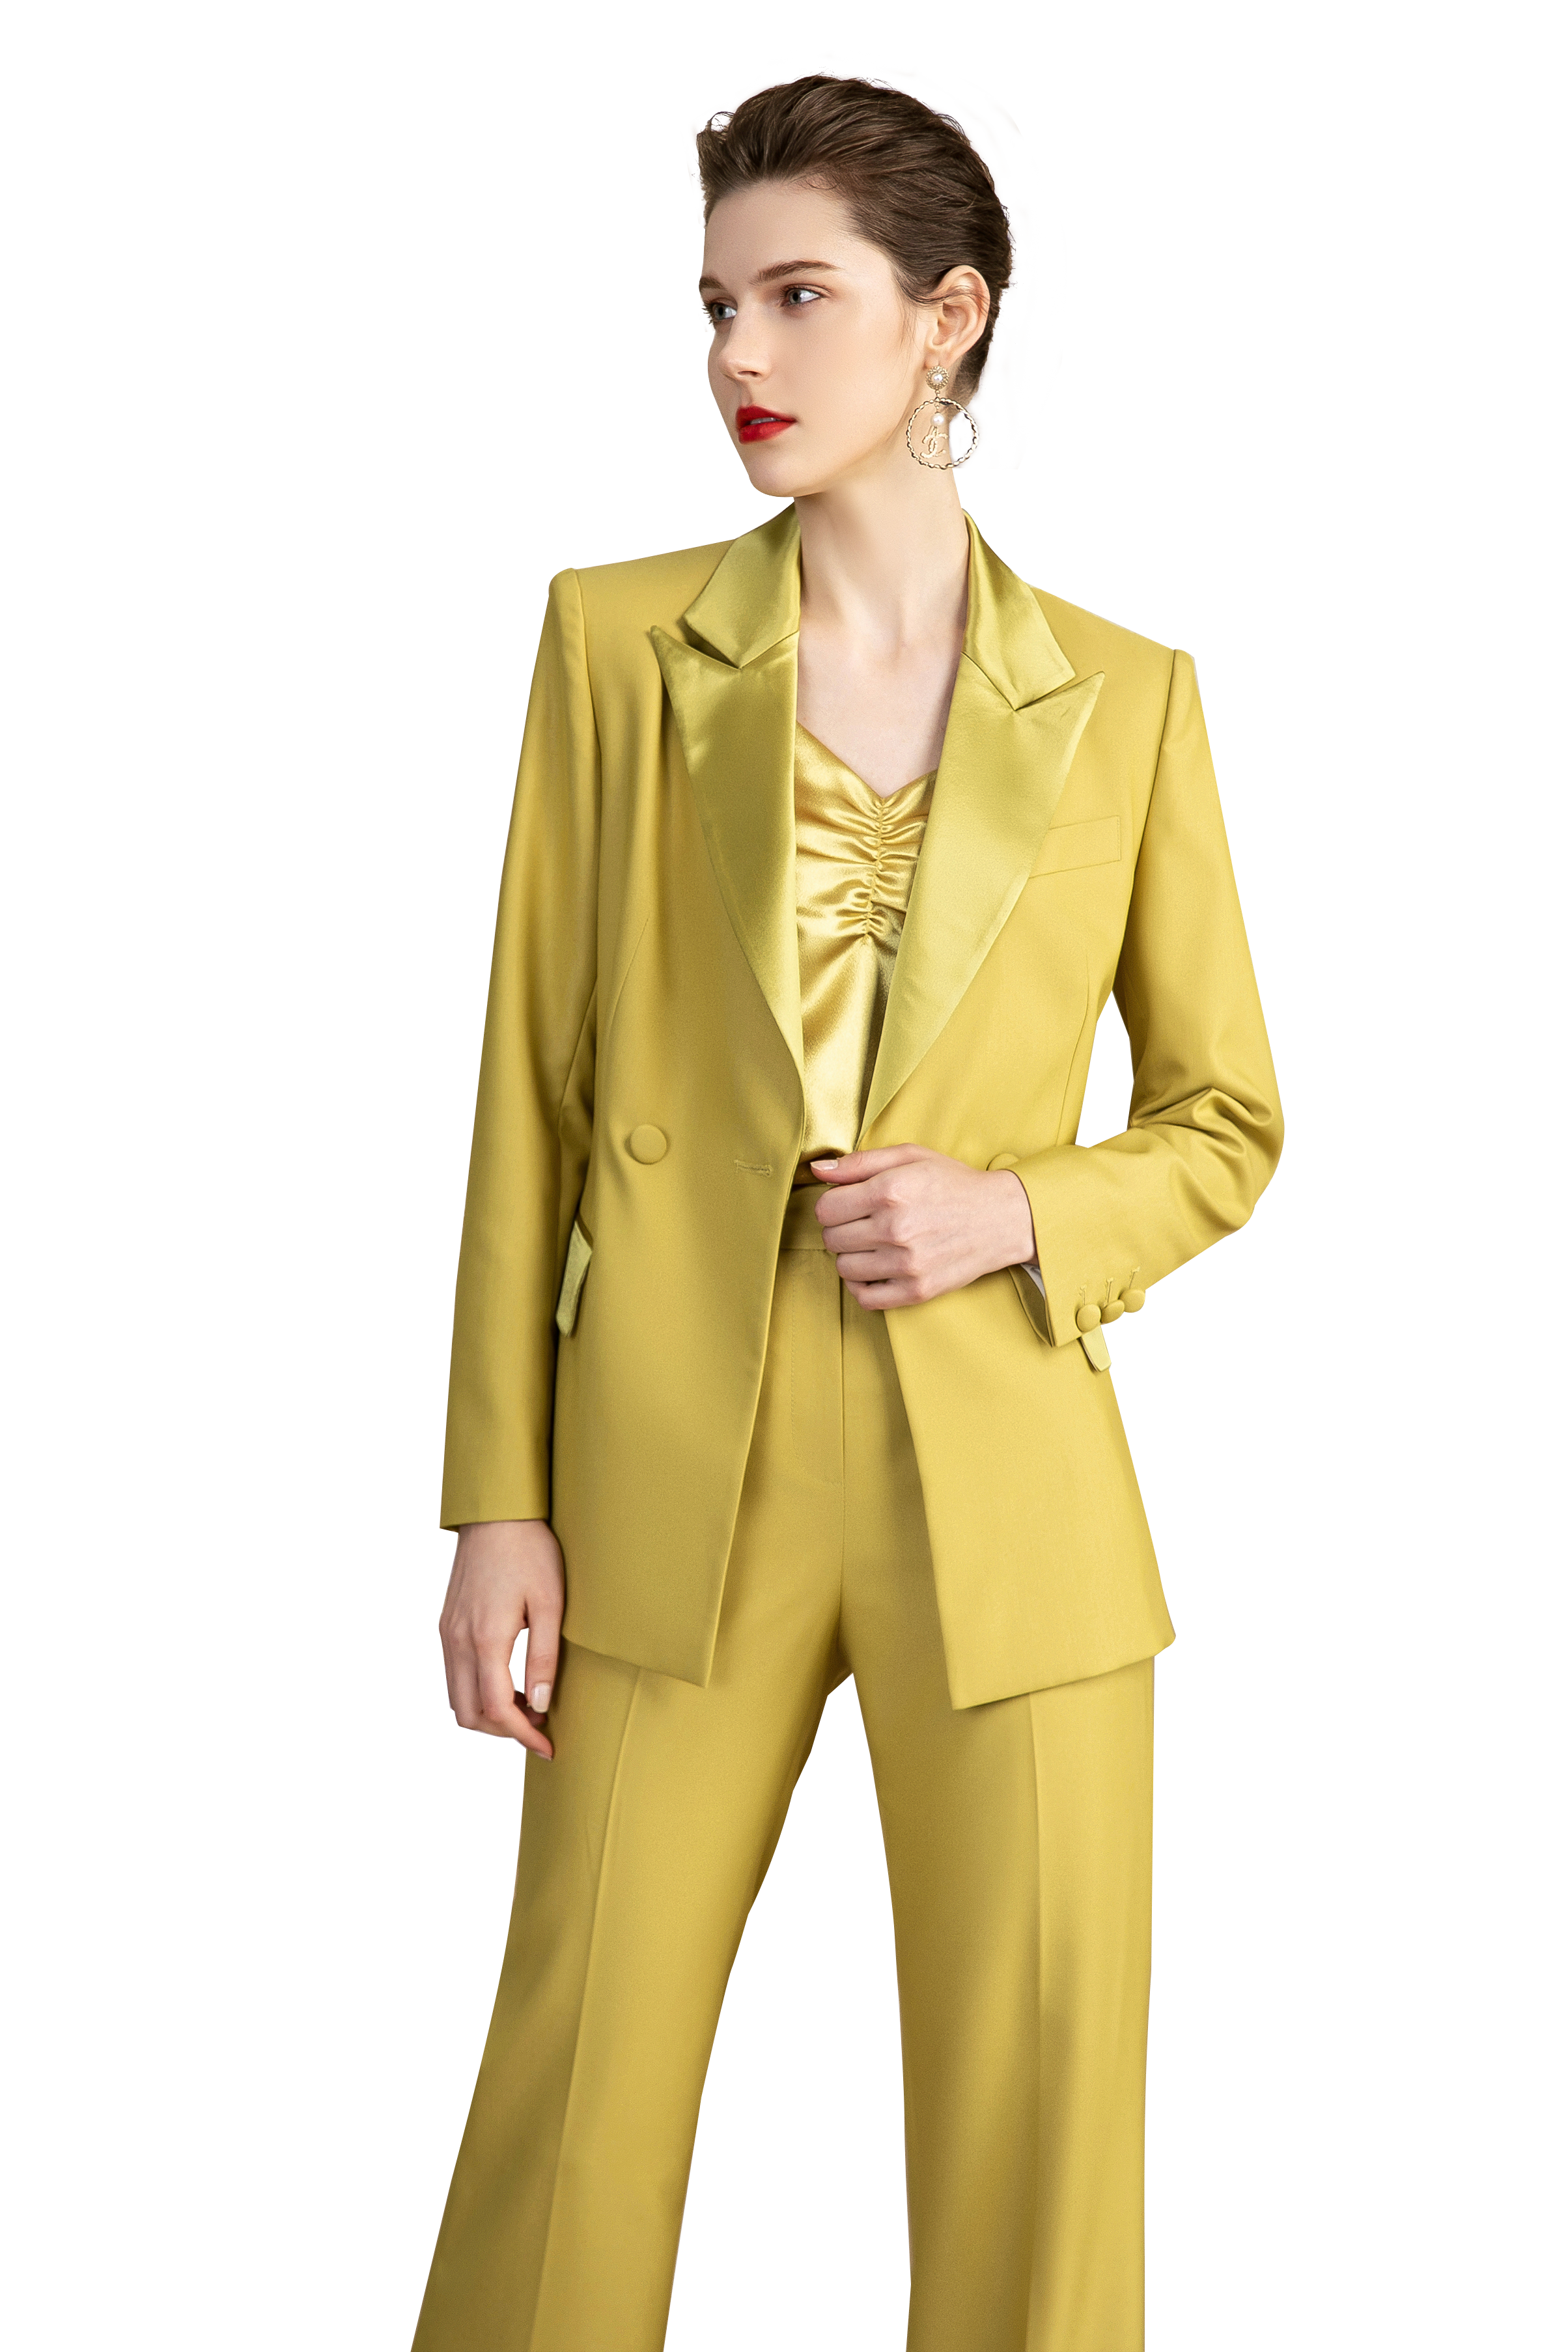 Olive Yellow Tuxedo Double Breasted Pantsuit - FashionByTeresa